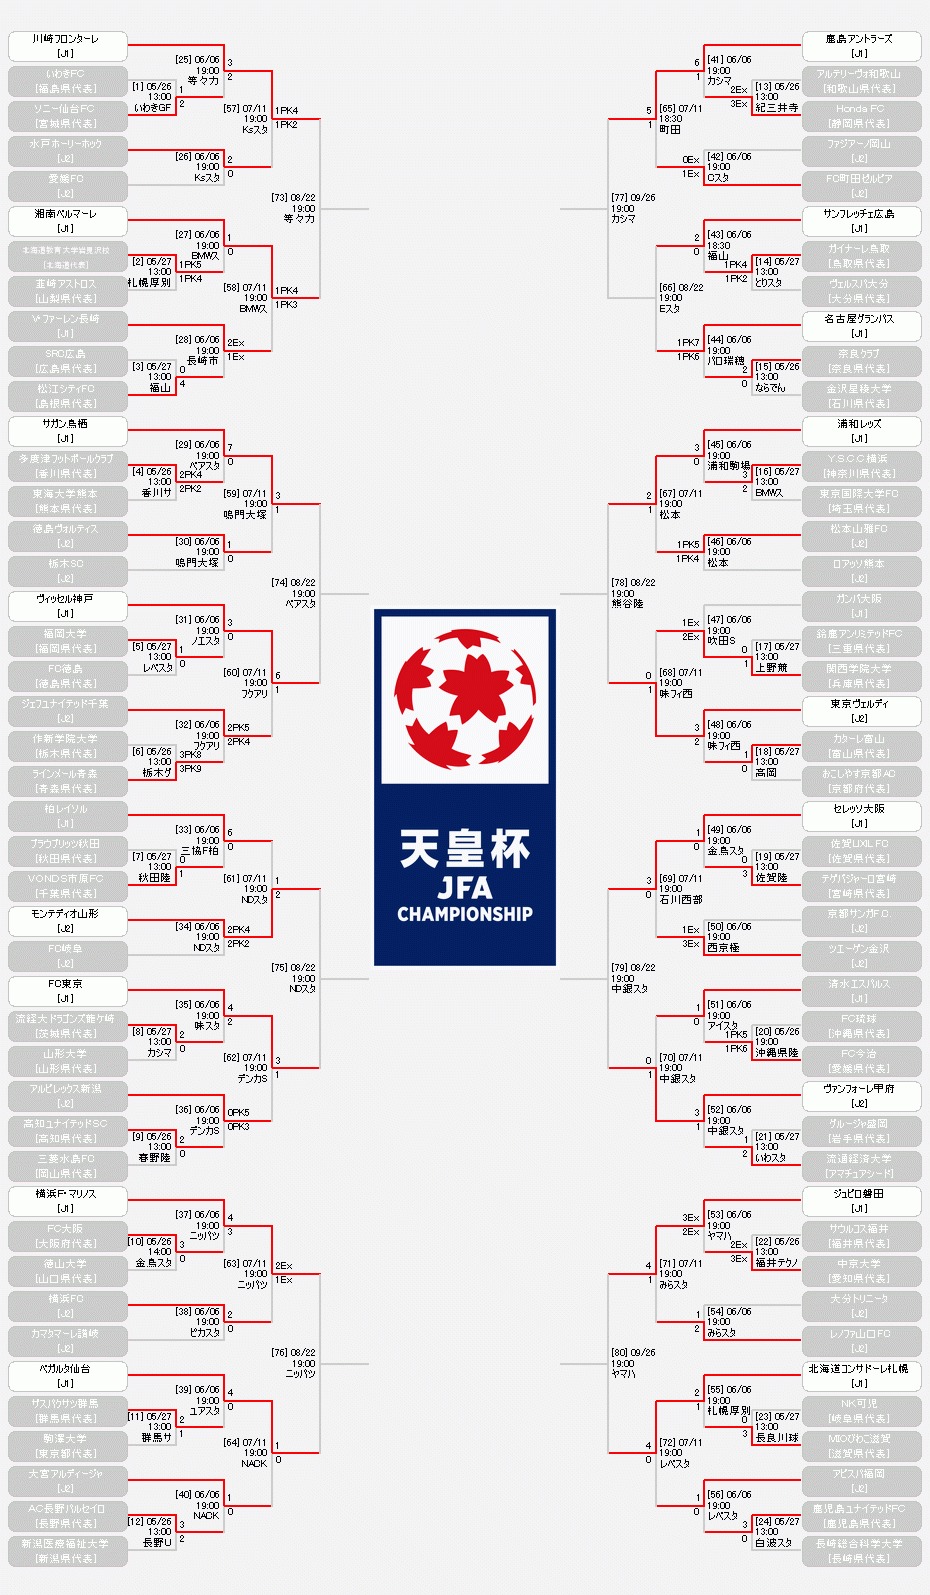 『天皇杯 JFA 第98回全日本サッカー選手権大会』の組み合わせ表